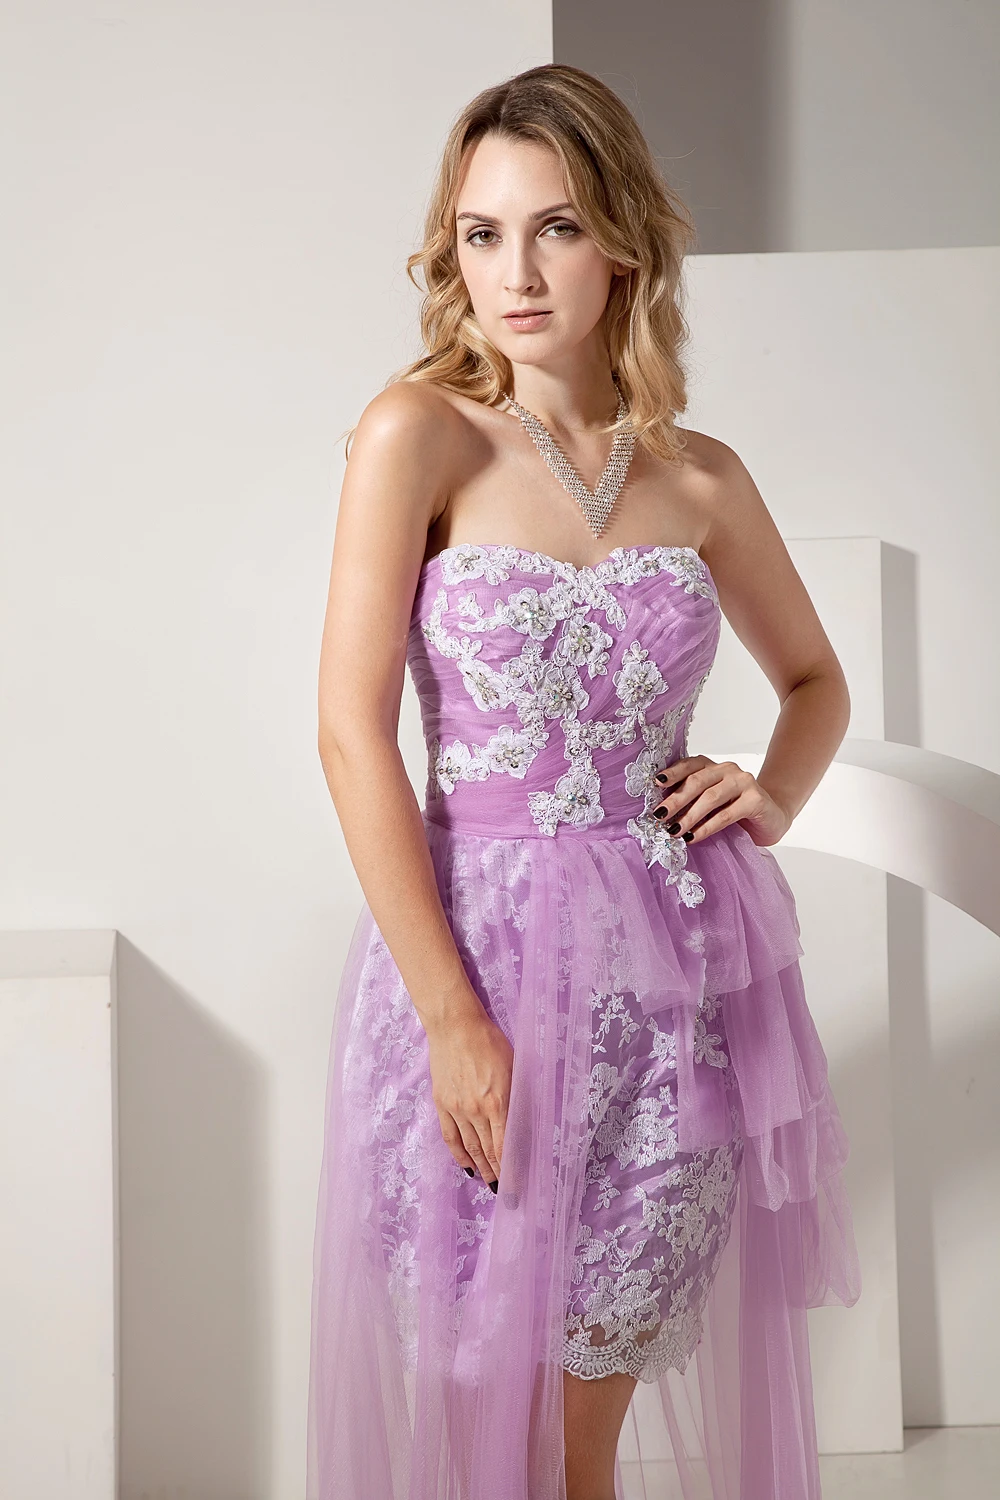 Красивое кружевное коктейльное платье с аппликацией Emily, фатиновое короткое платье для выпускного вечера, вечернее торжественное платье, платье de soiree